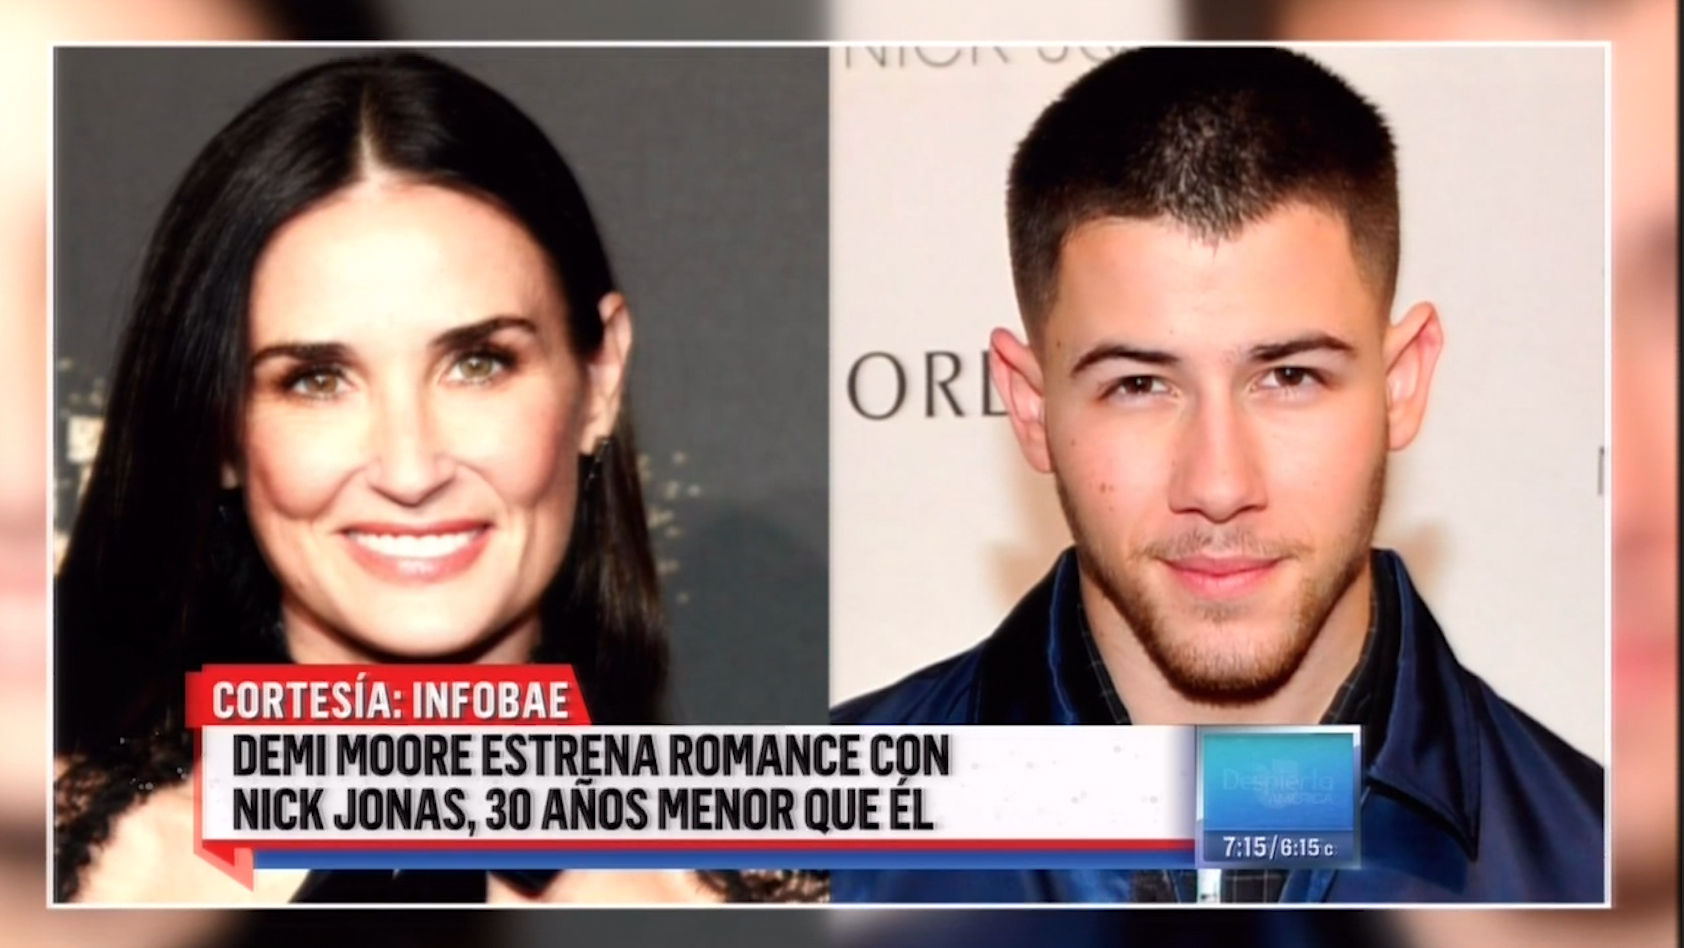 La Actriz Demi Moore Al Parecer En Romance Con Nick Jonas, 30 Años Menor Que Ella